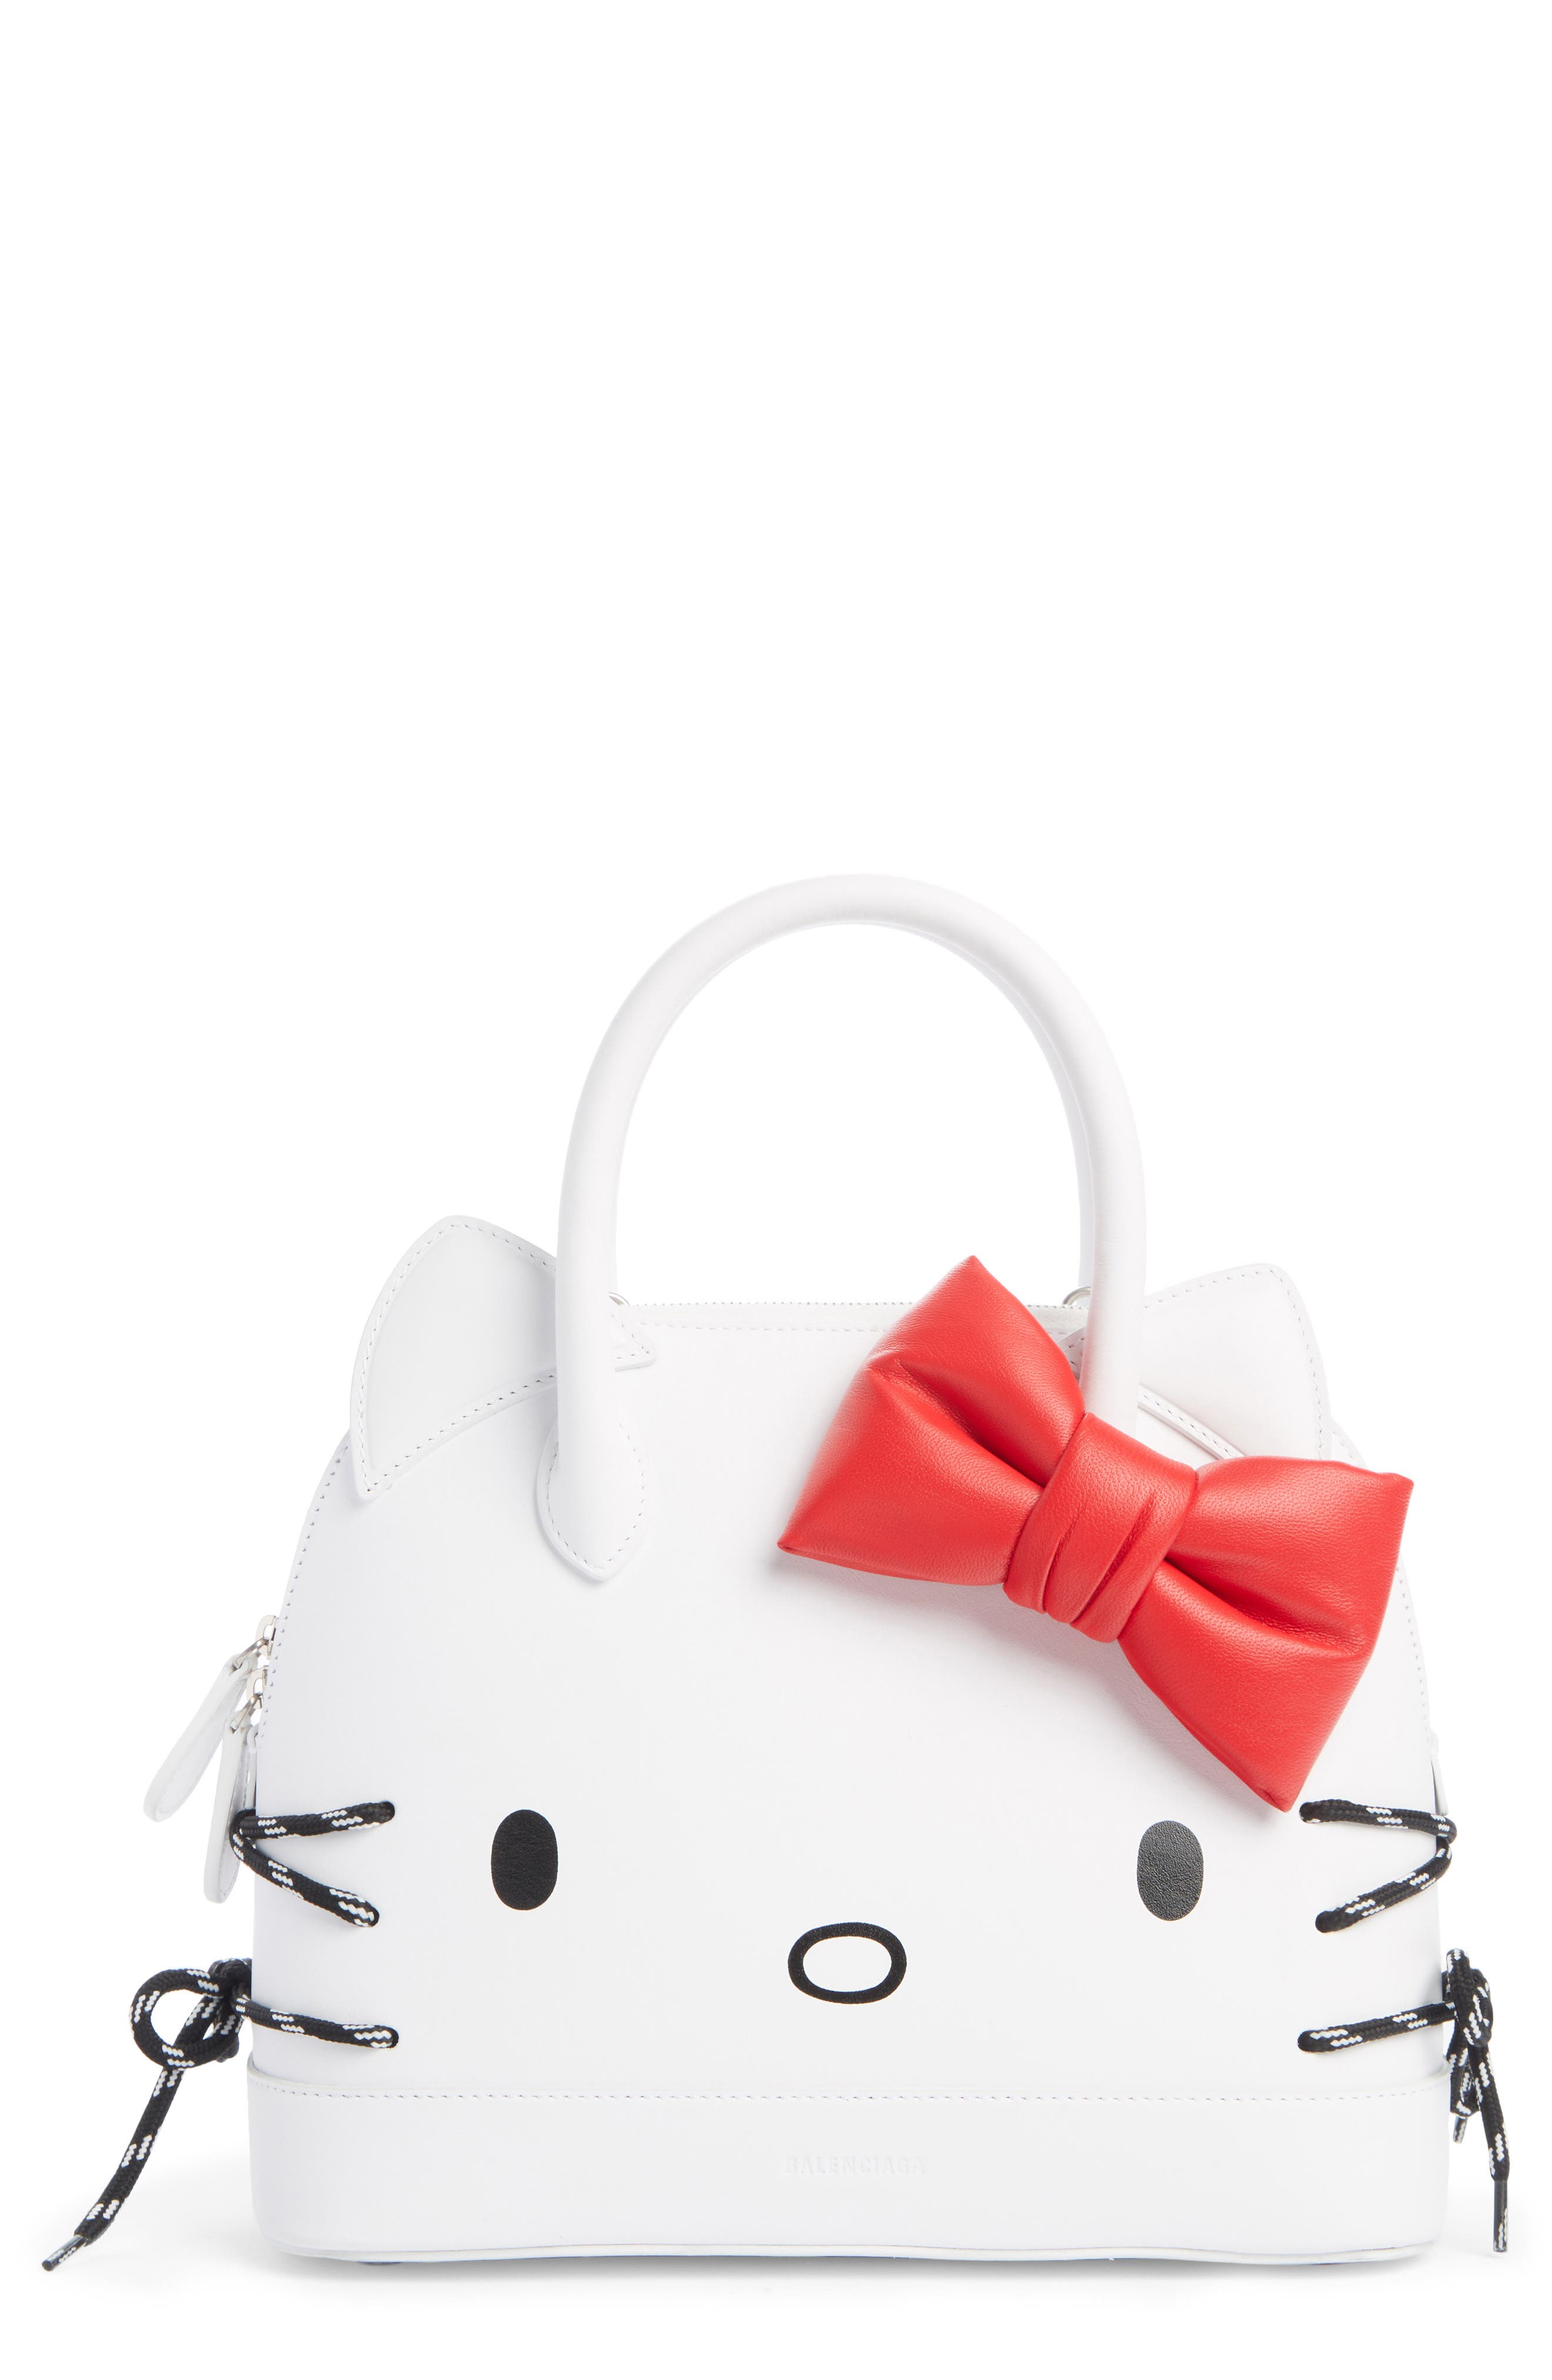 balenciaga hello kitty purse